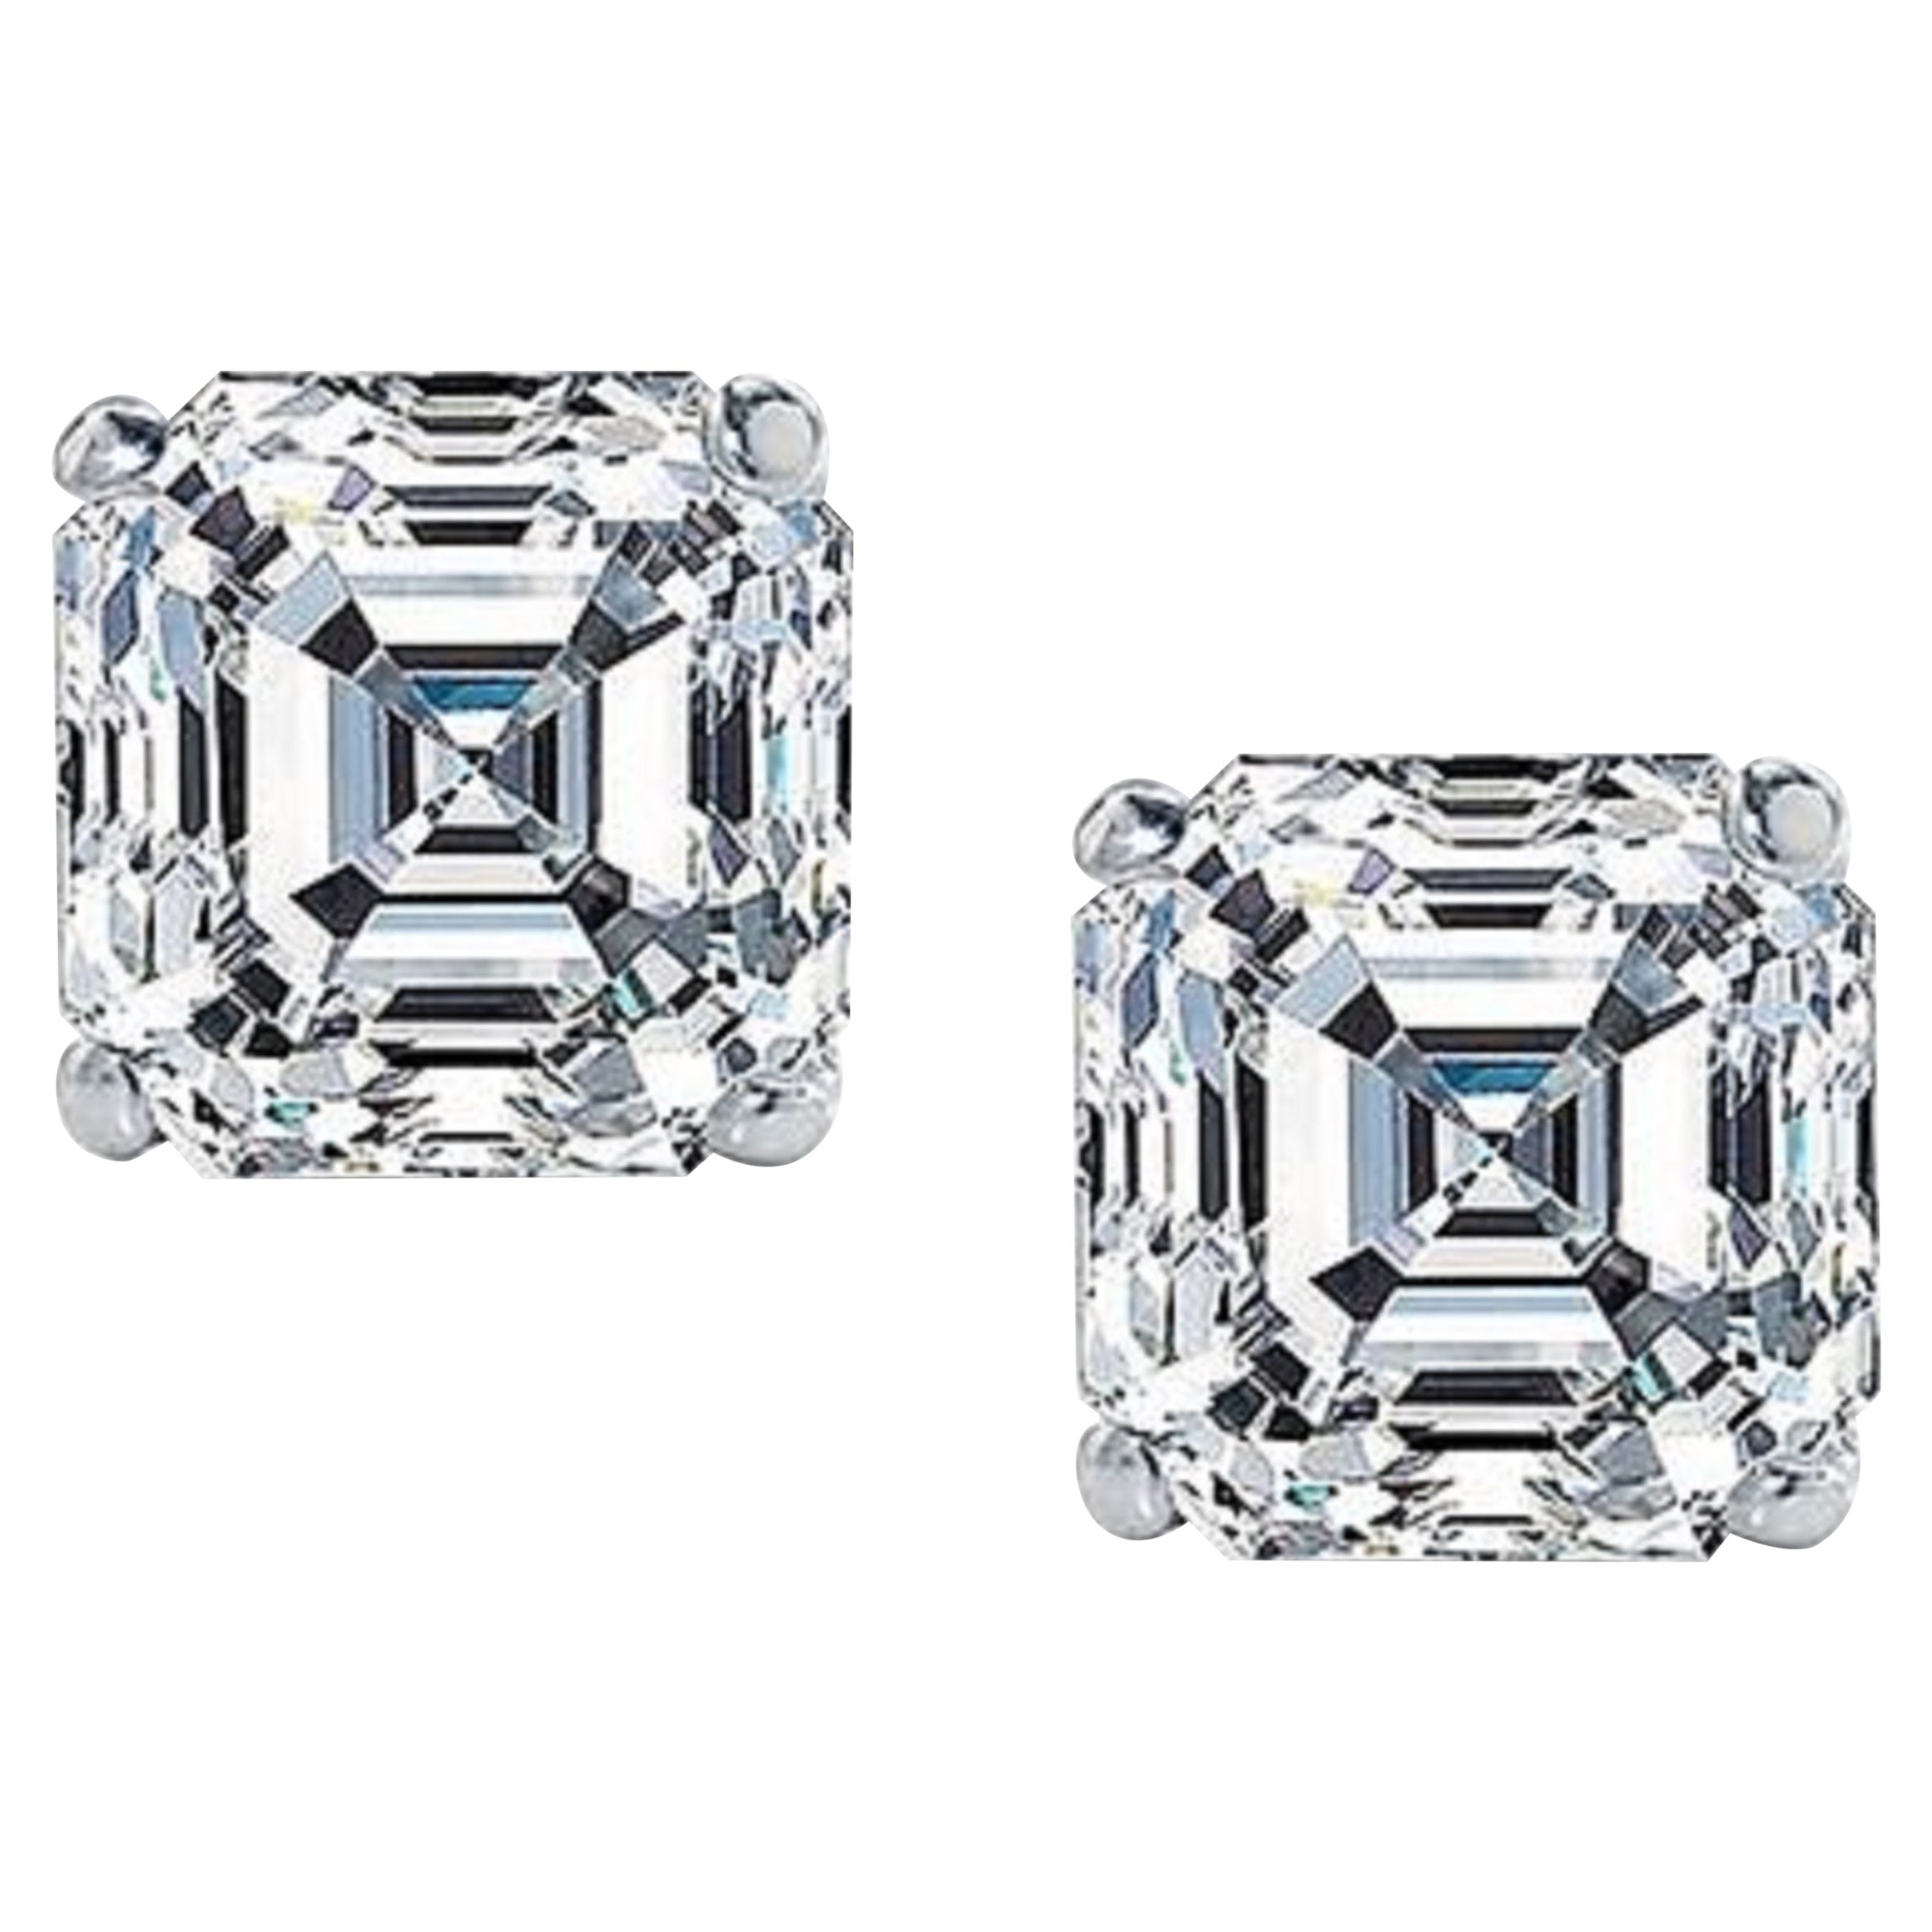 GIA Certified 6.12 Carat Asscher Cut Diamond Platinum Studs